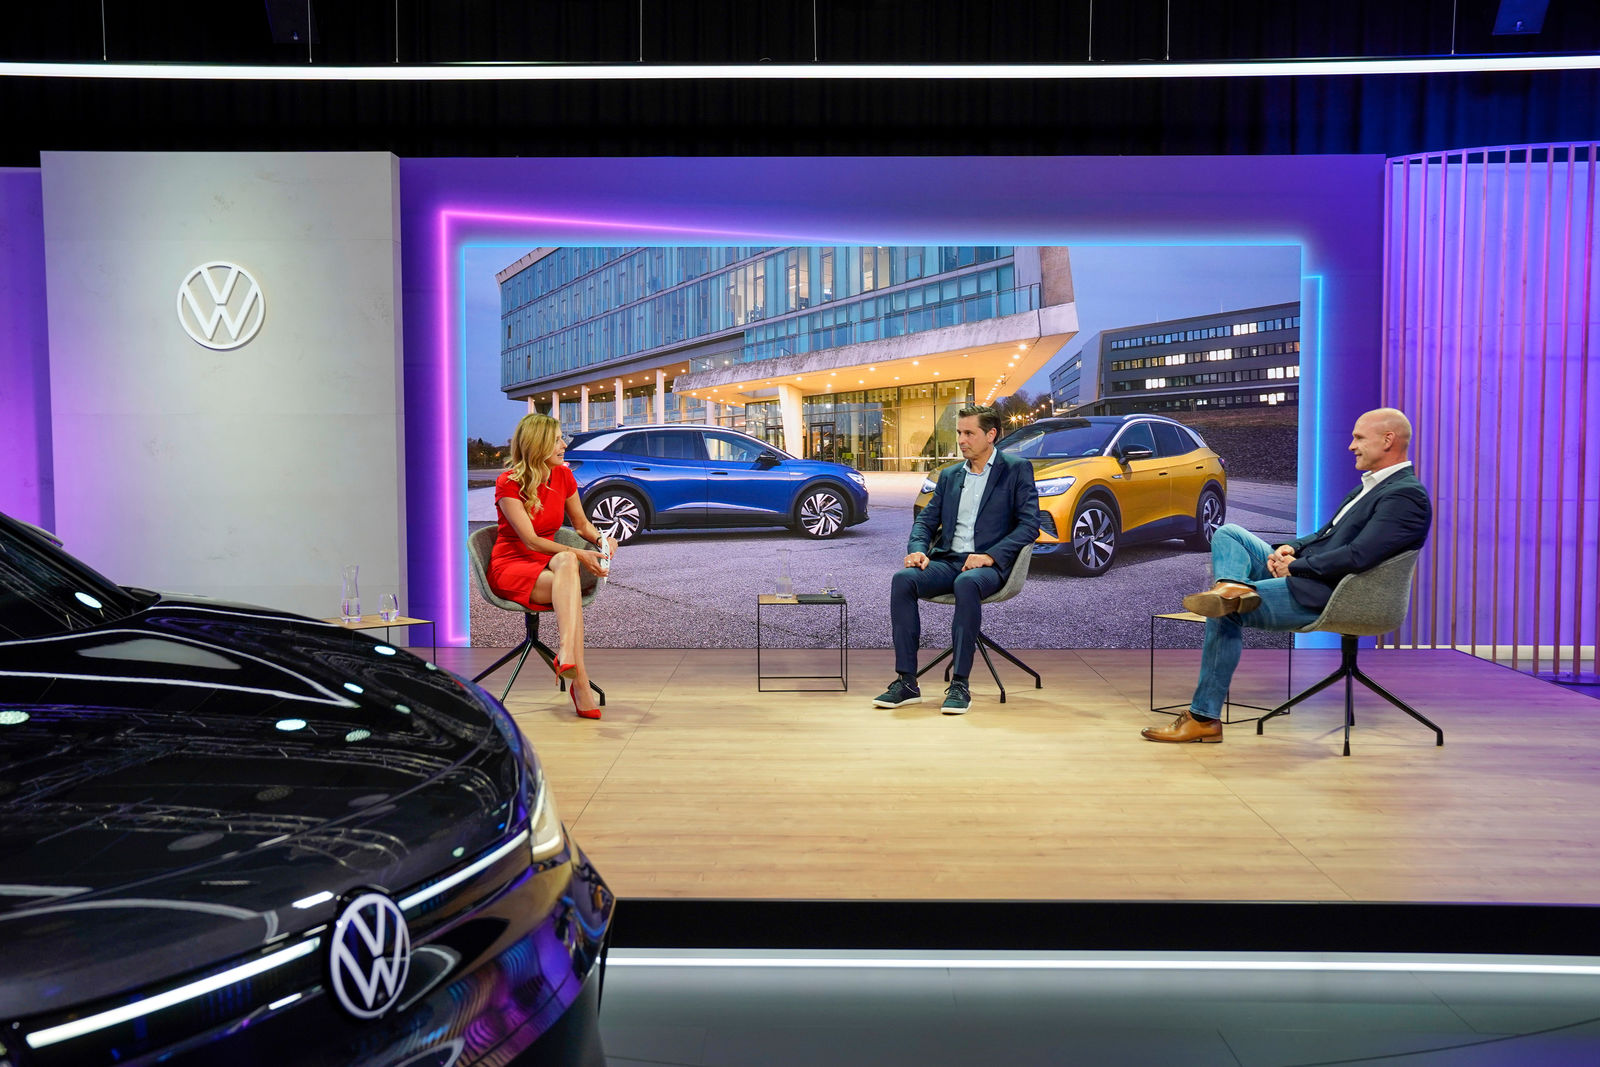 Innovation Talk - Die Volkswagen Software-Offensive